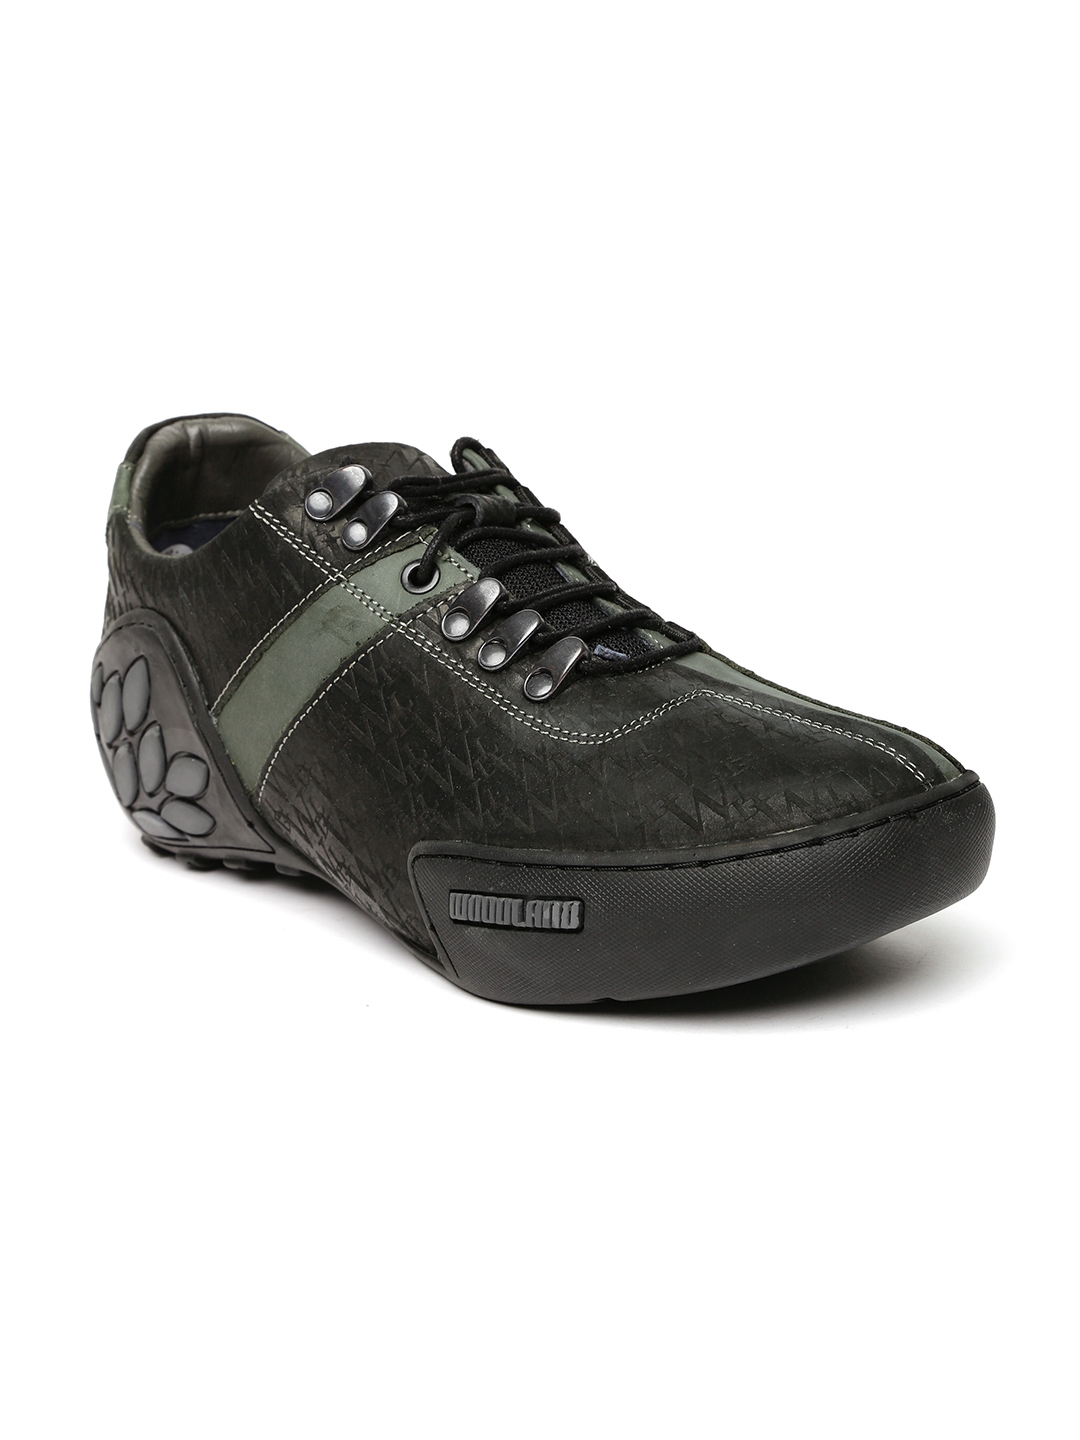 woodland black leather shoes